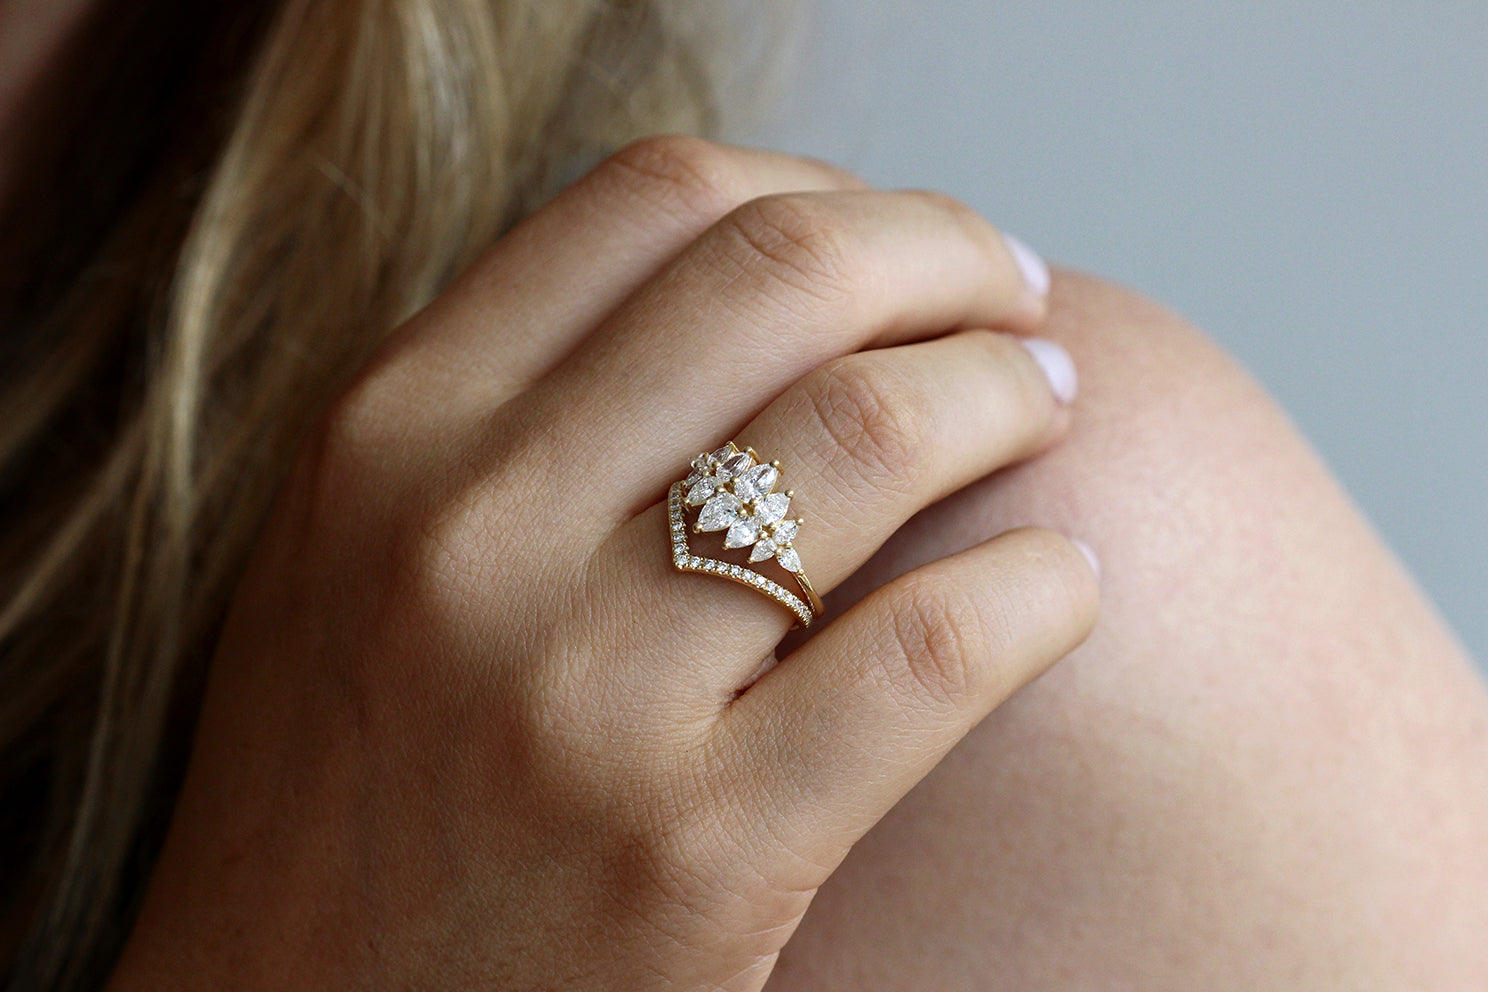 2 Carat Pear Diamond Engagement Ring, E VS2 Pear Engagement Ring, 14K White  Gold Diamond Ring, Side Stone Diamond Ring, Pear Shaped Diamond - Etsy UK